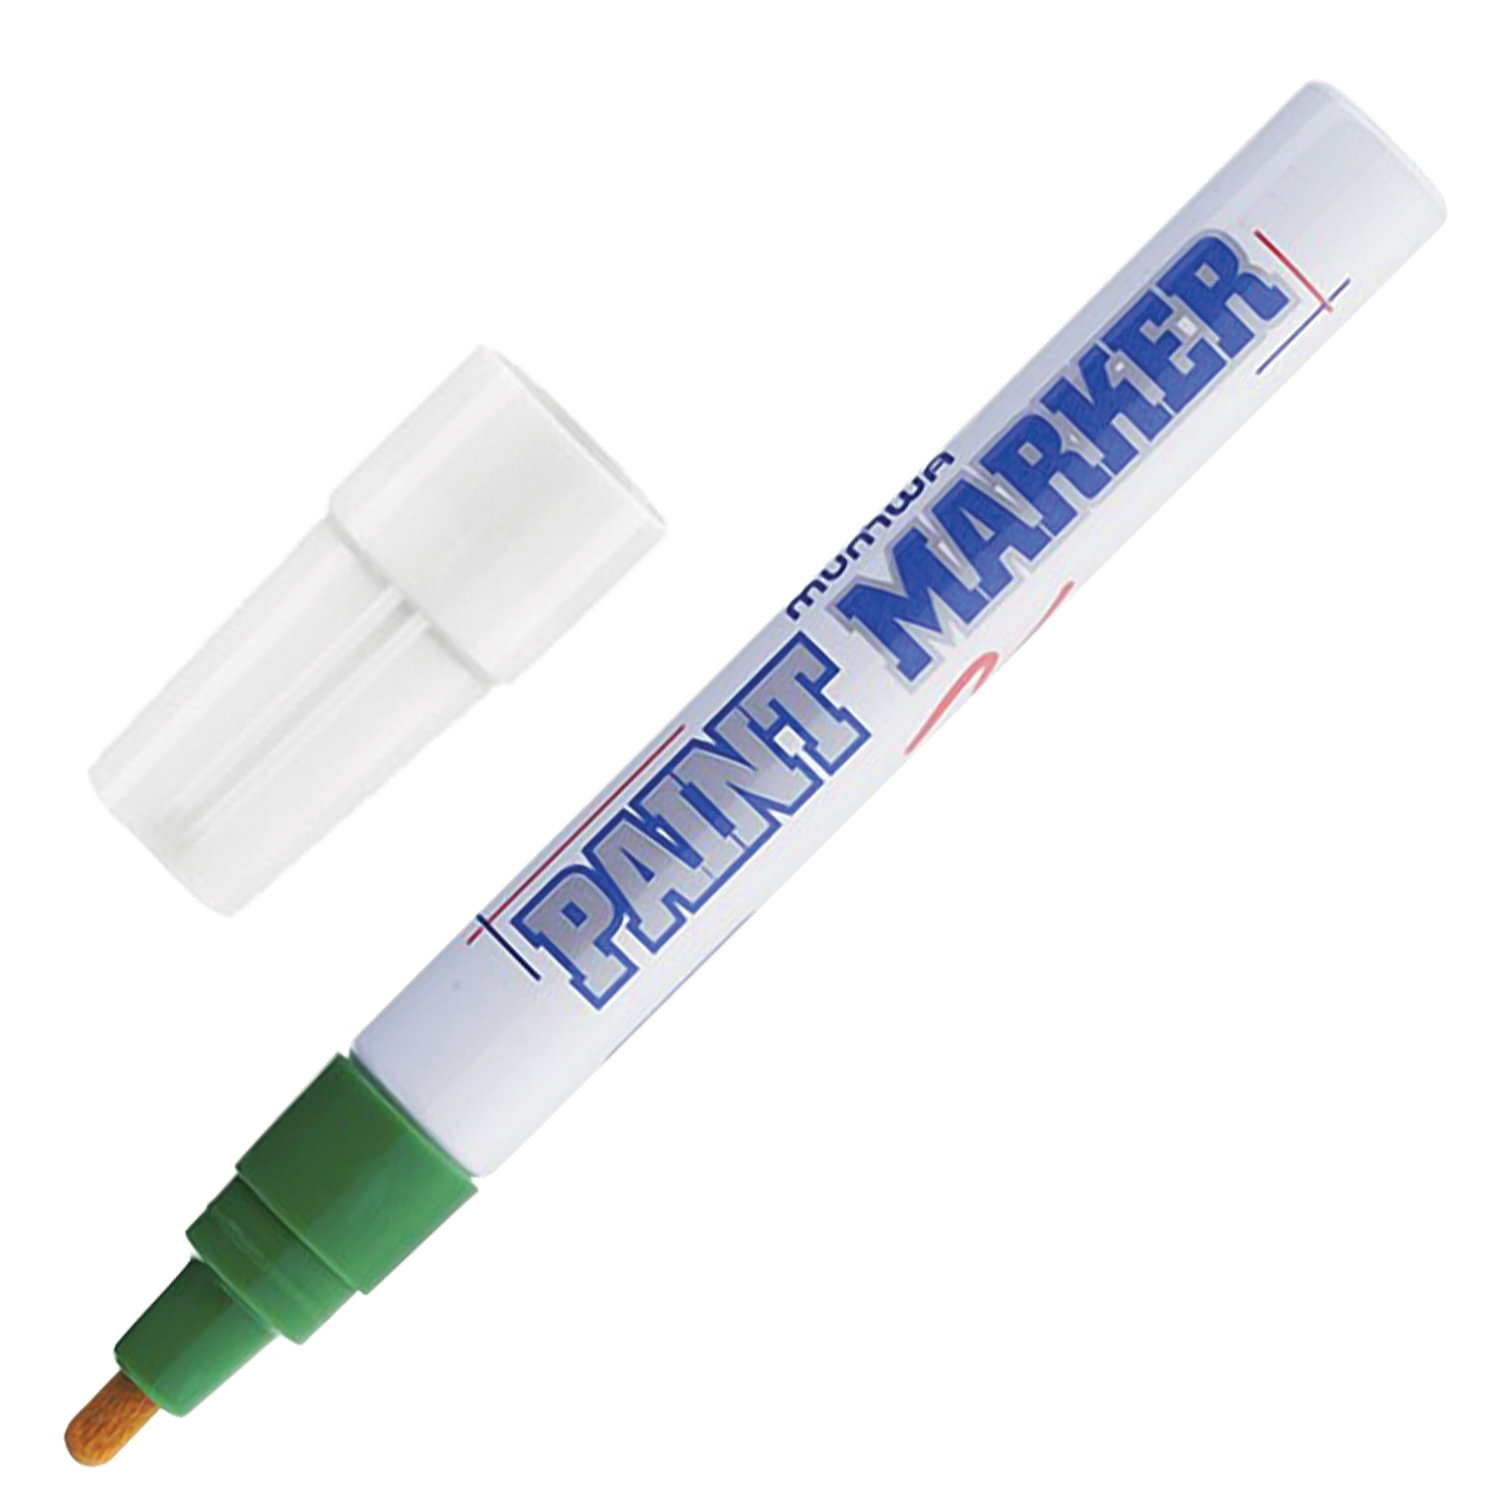 Маркер-краска лаковый (paint marker) MUNHWA, 4 мм, ЗЕЛЕНЫЙ, нитро-основа, алюминиевый корпус, PM-04 купите по выгодной цене